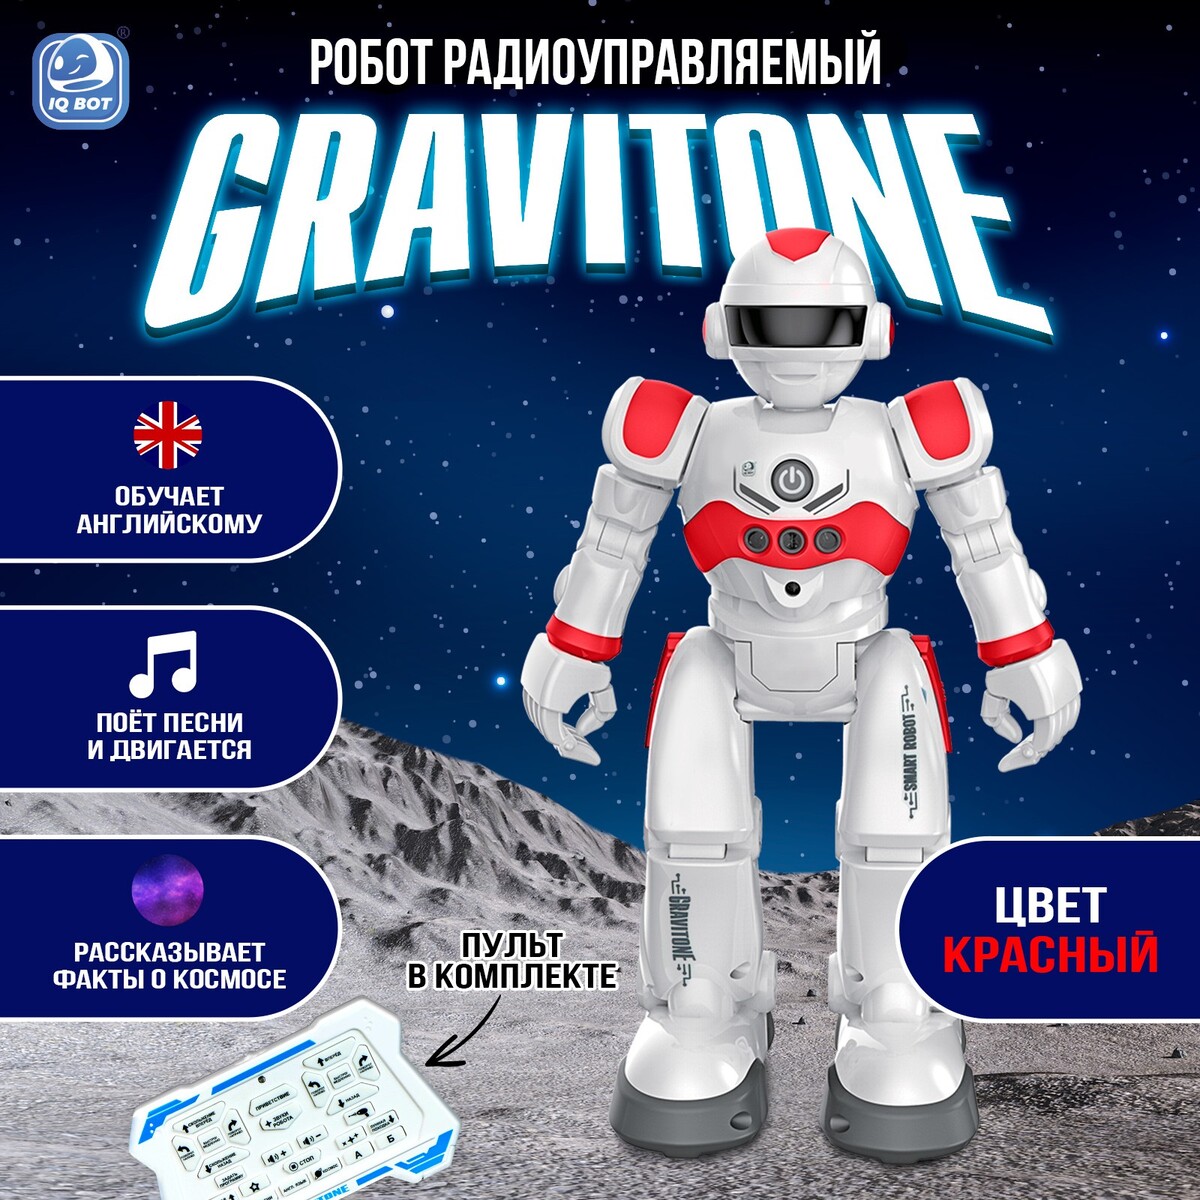 Робот радиоуправляемый iq bot gravitone, русское озвучивание, цвет красный русское театральное зарубежье